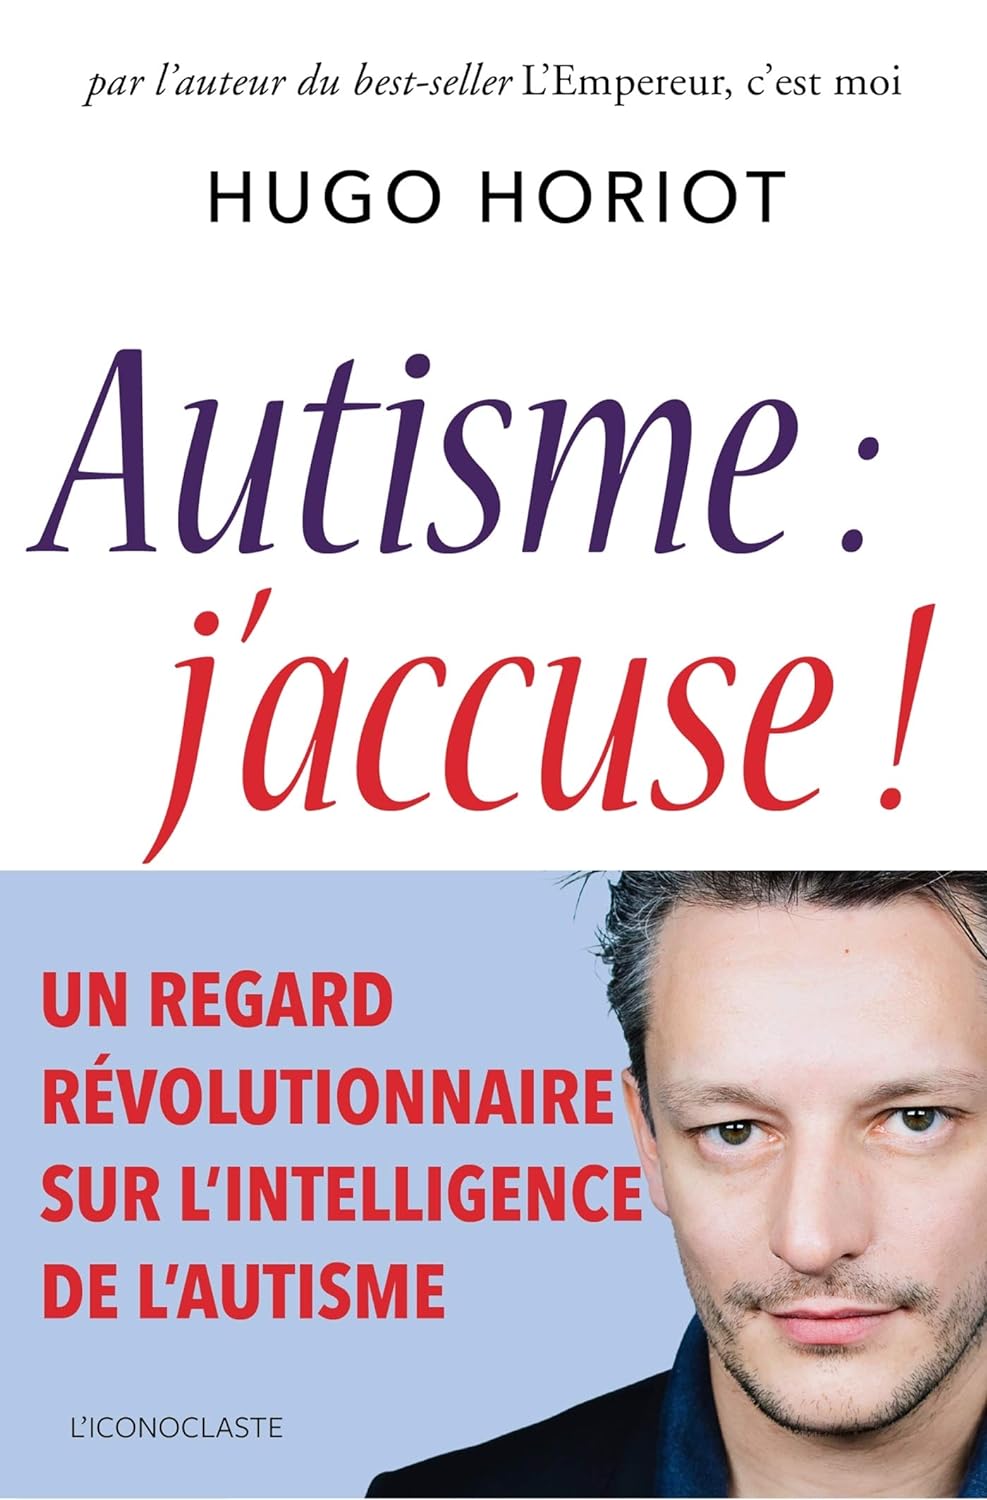 [France] “Autisme, j’accuse !” (Hugo Horiot, 2018)